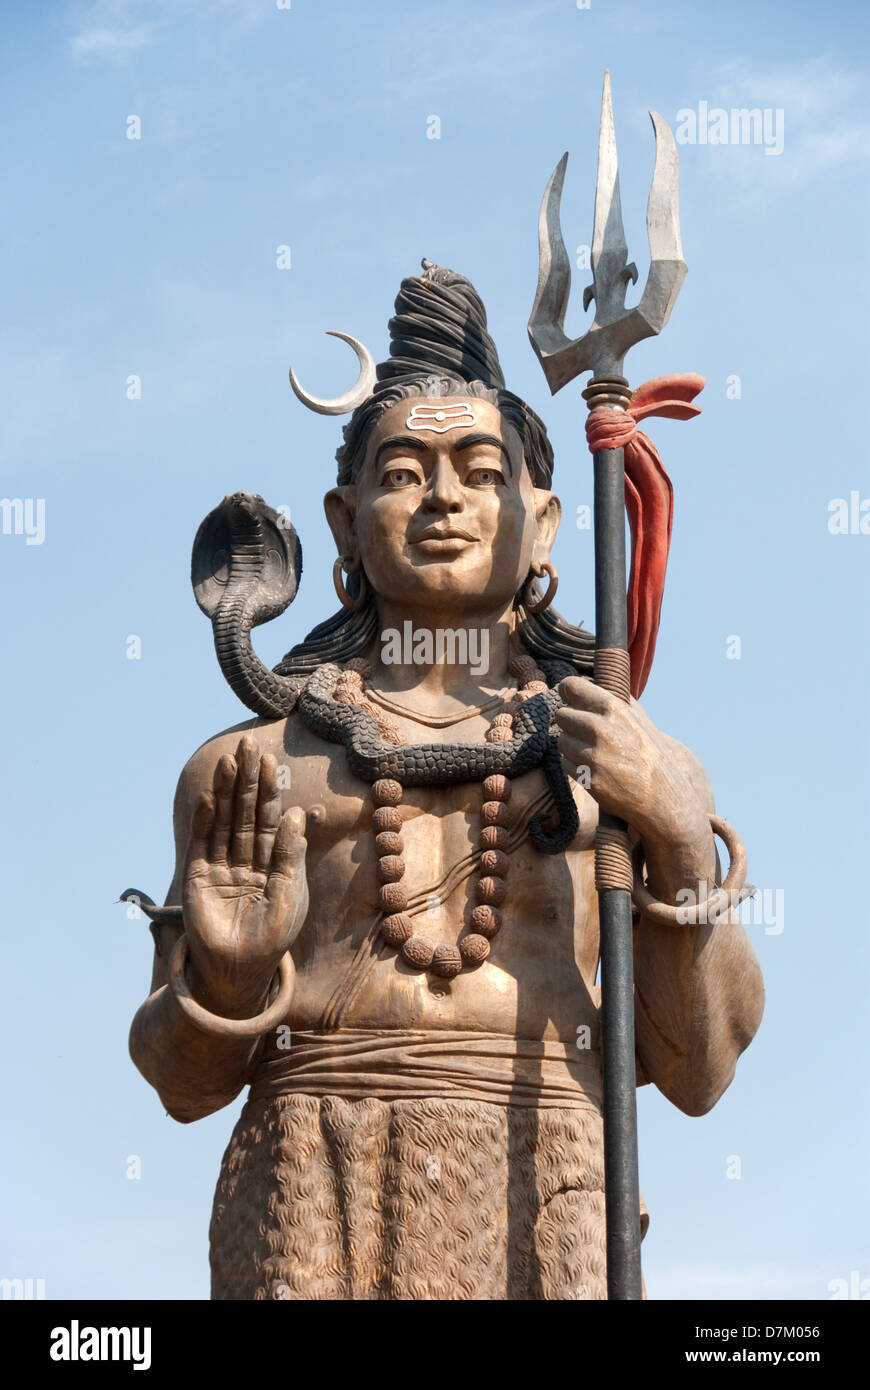 Lord Shiva mit einem Cobra Coil am Hals ist, den Schlangenbeschwörern glaubte, dass sie die direkten Nachkommen von sind.  Lord Shiva wird dargestellt, mit einer Kobra um seinen Hals gewickelt und wurde von Millionen von Hindus seit Jahrhunderten verehrt worden, und auch heute noch viele Hindus suchen Saperas so wie sie huldigen, Kobras leben können. Stockfoto